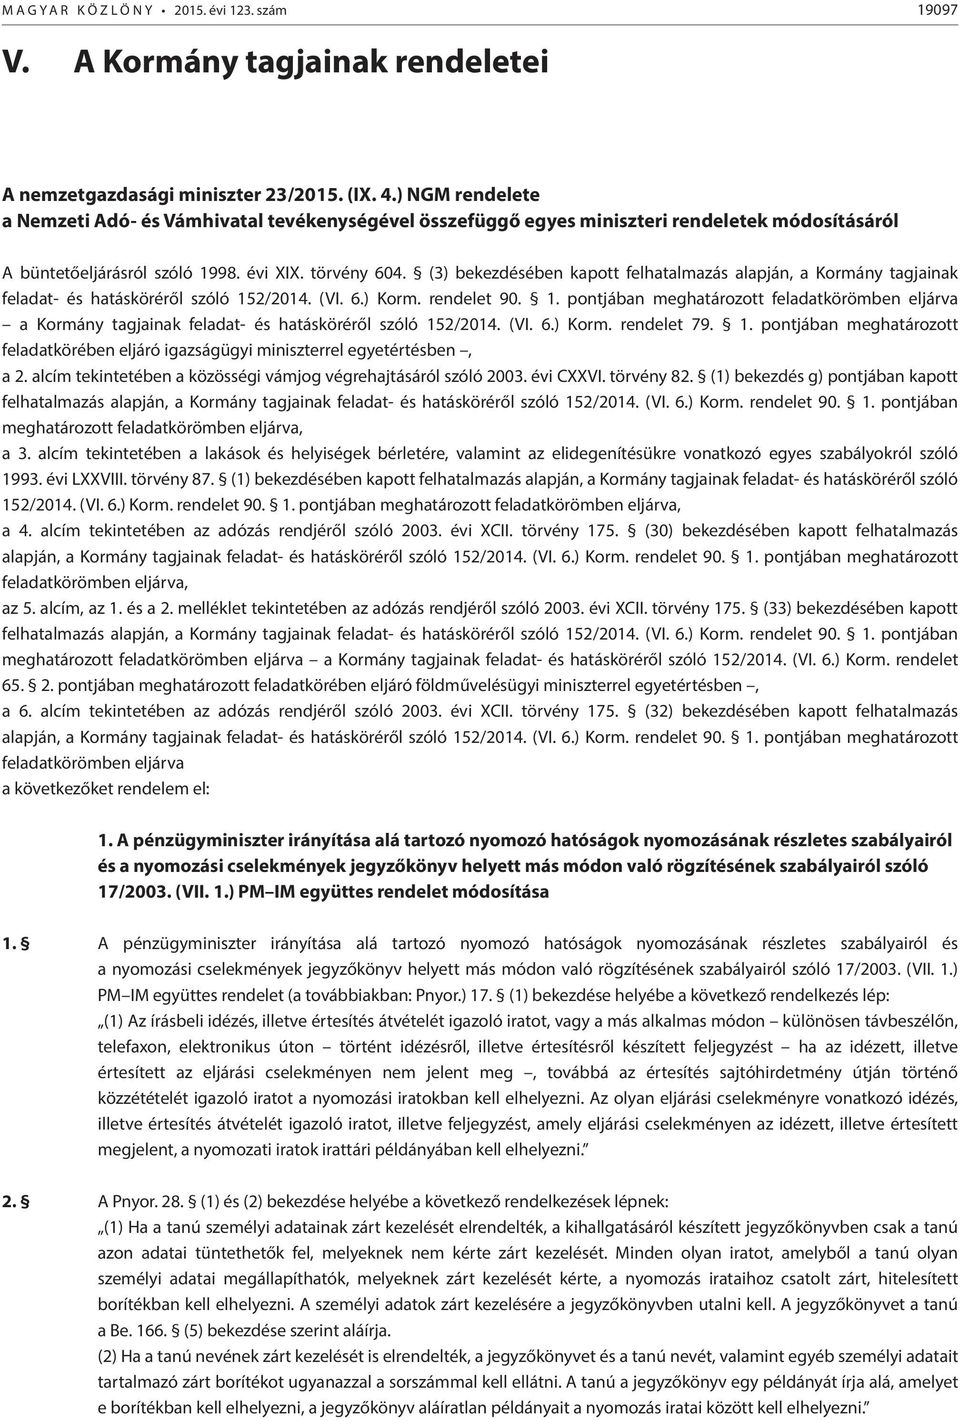 (3) bekezdésében kapott felhatalmazás alapján, a Kormány tagjainak feladat- és hatásköréről szóló 15